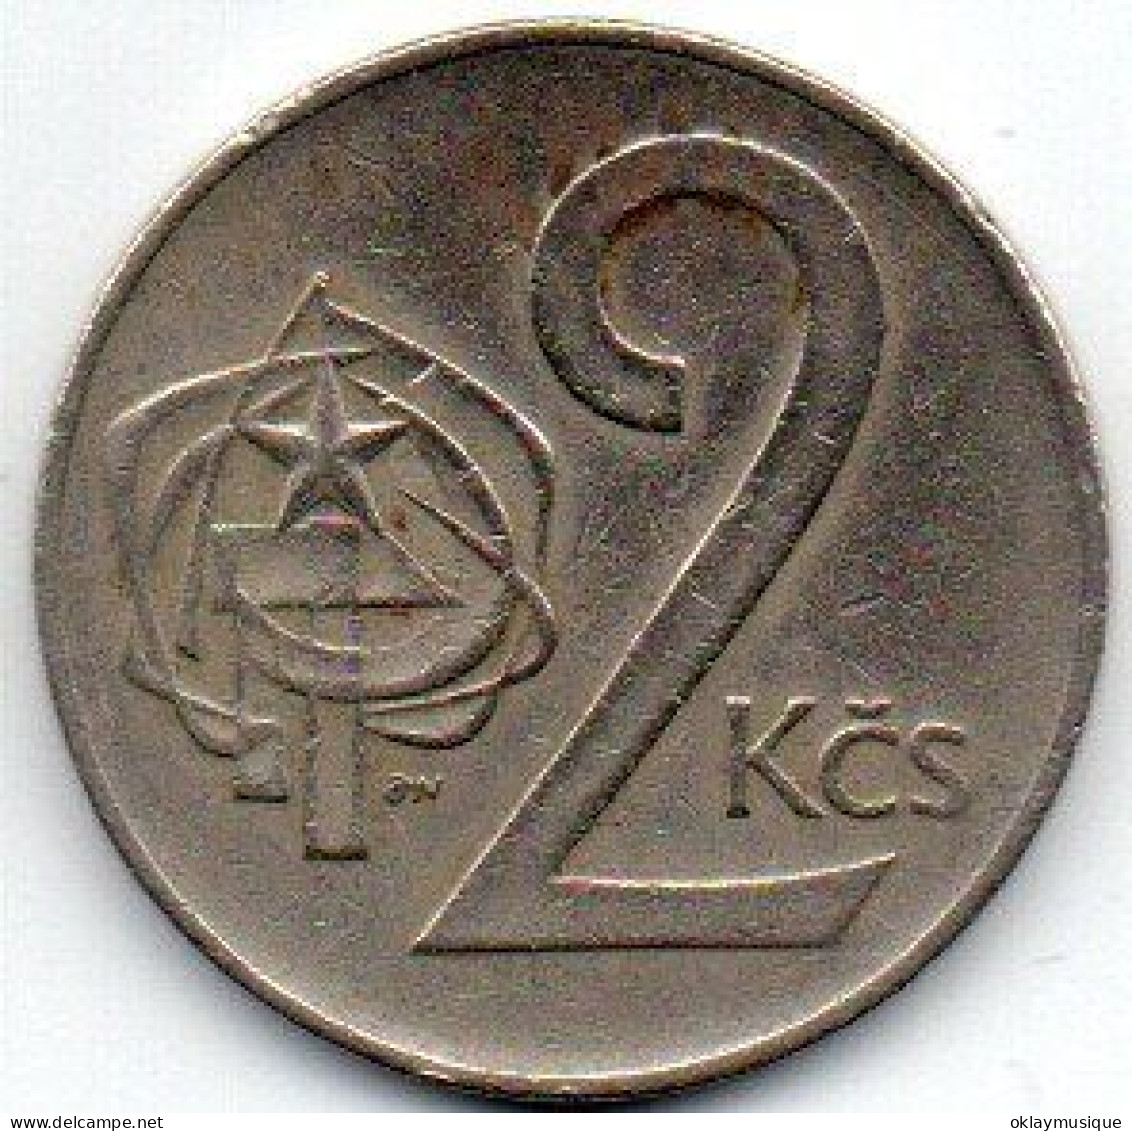 2 Koriny 1972 - Tchécoslovaquie